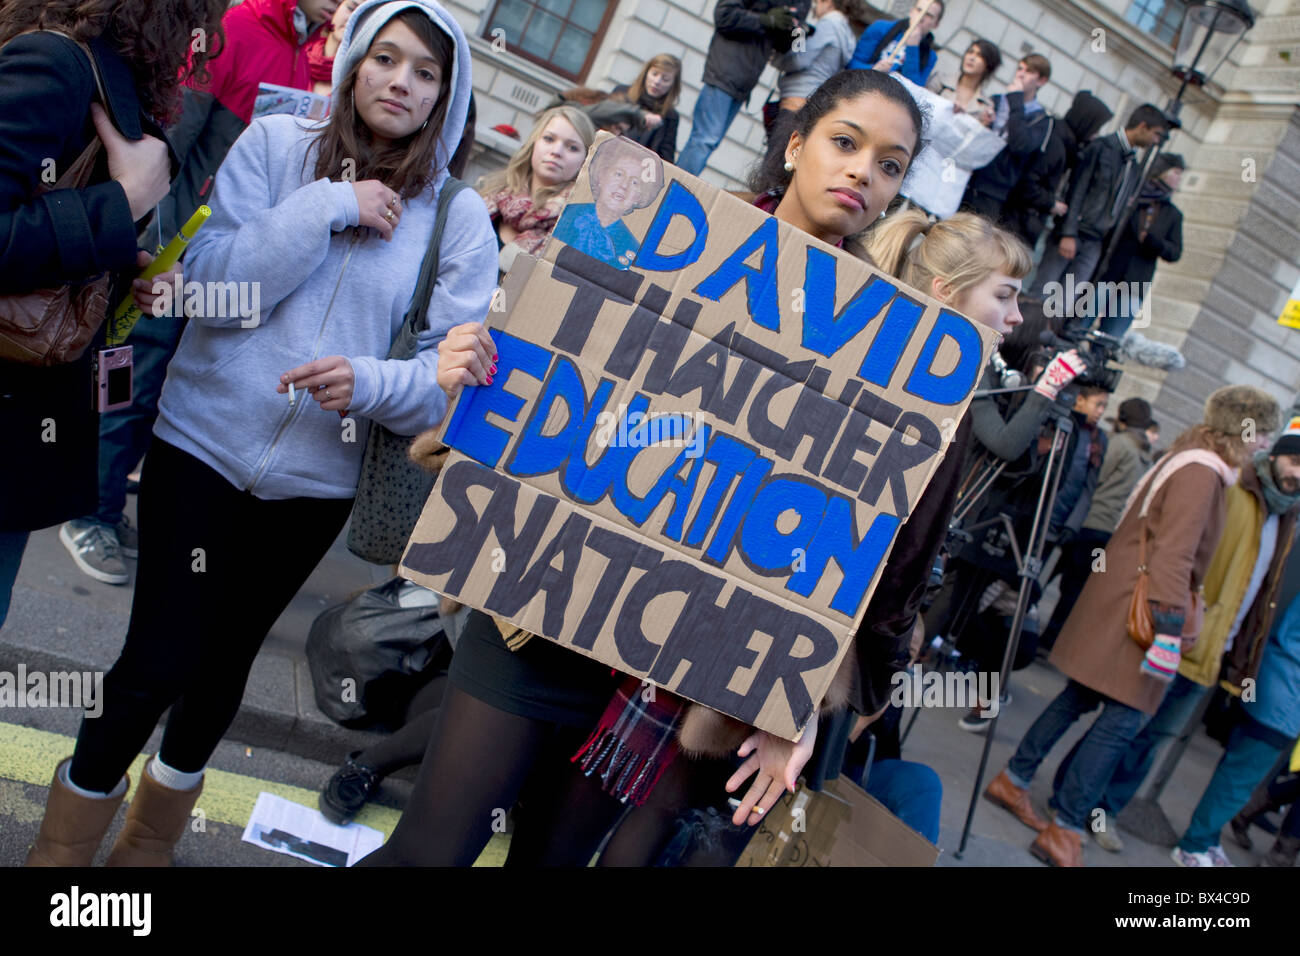 Étudiants qui manifestaient contre l'augmentation des frais de scolarité,Whitehall, Londres Novembre 2010 Banque D'Images